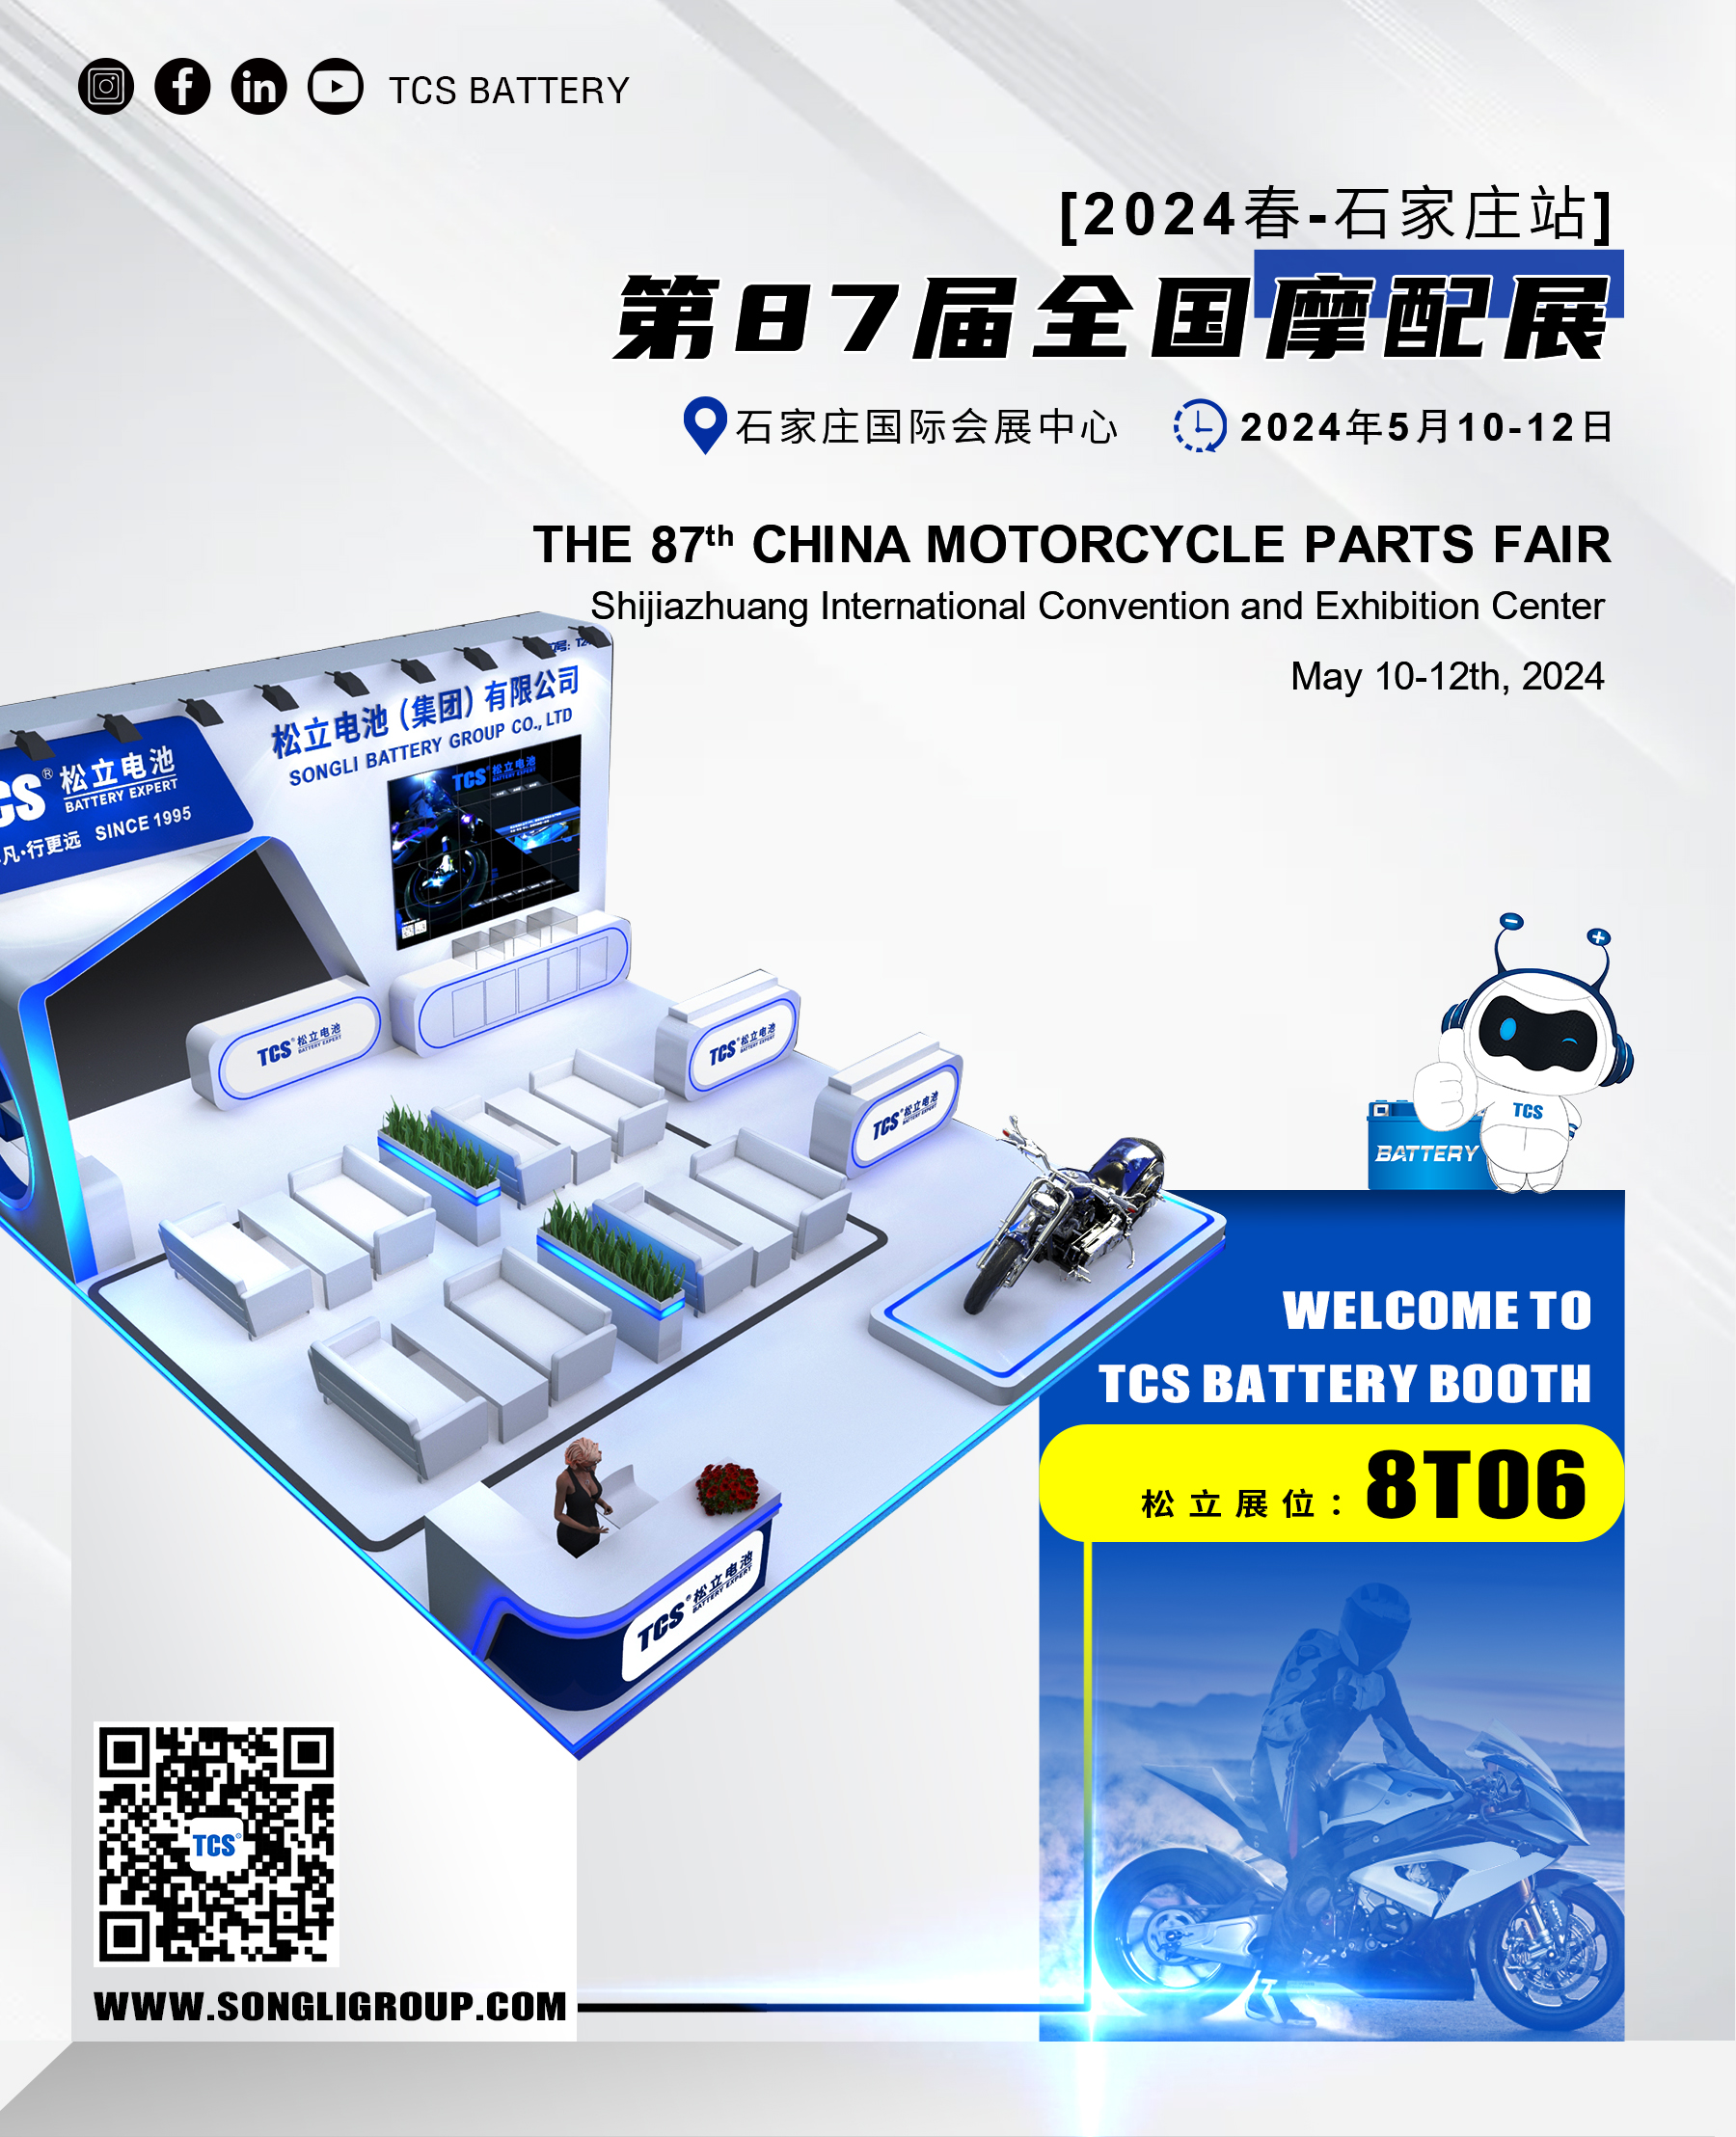 Ang 87th China Motorcycle Parts Fair